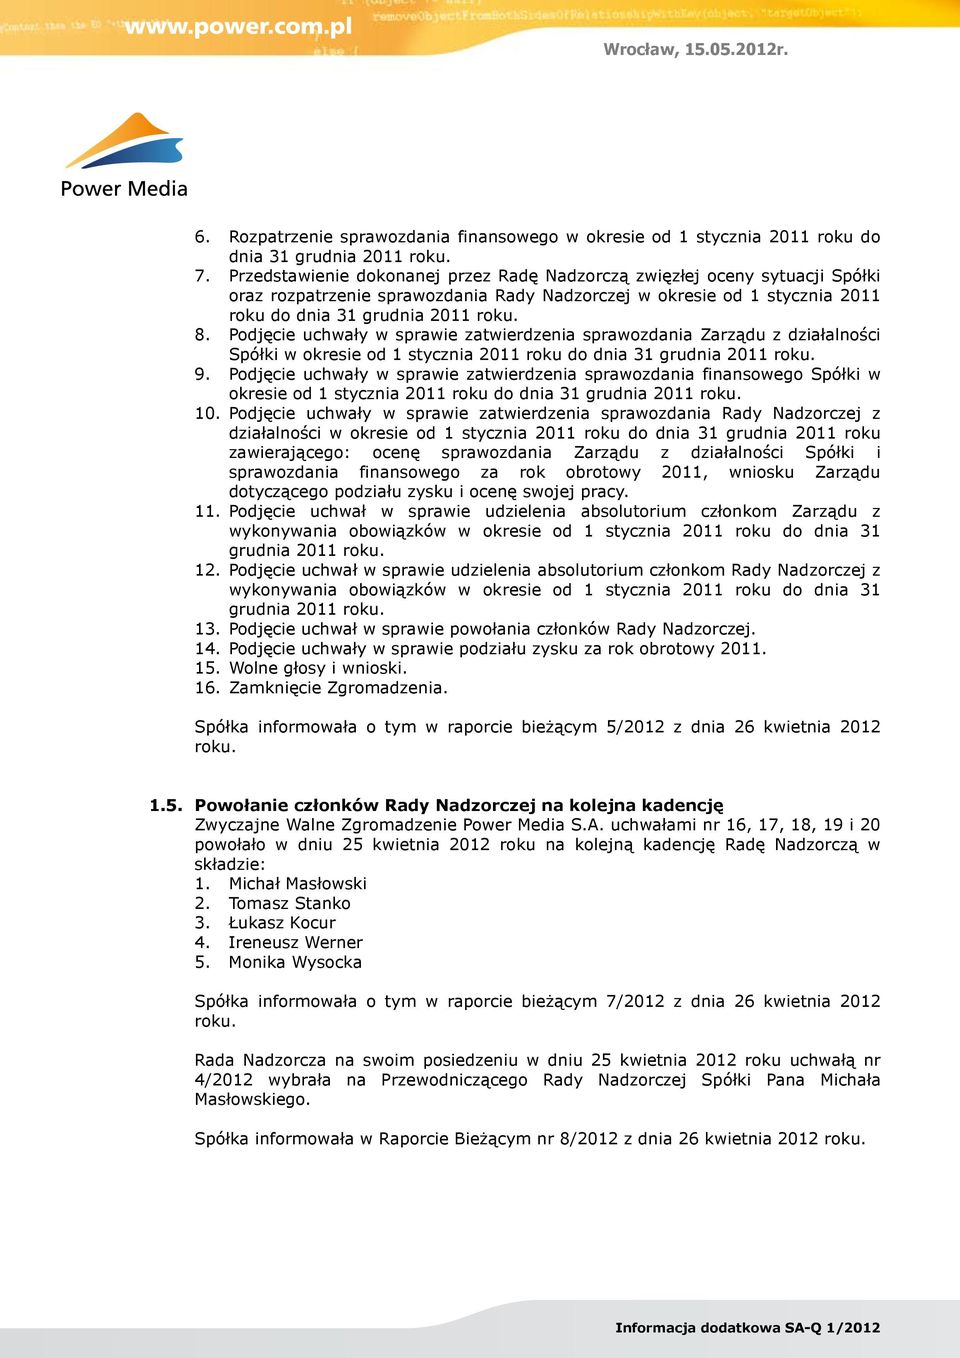 Podjęcie uchwały w sprawie zatwierdzenia sprawozdania Zarządu z działalności Spółki w okresie od 1 stycznia 2011 roku do dnia 31 grudnia 2011 roku. 9.